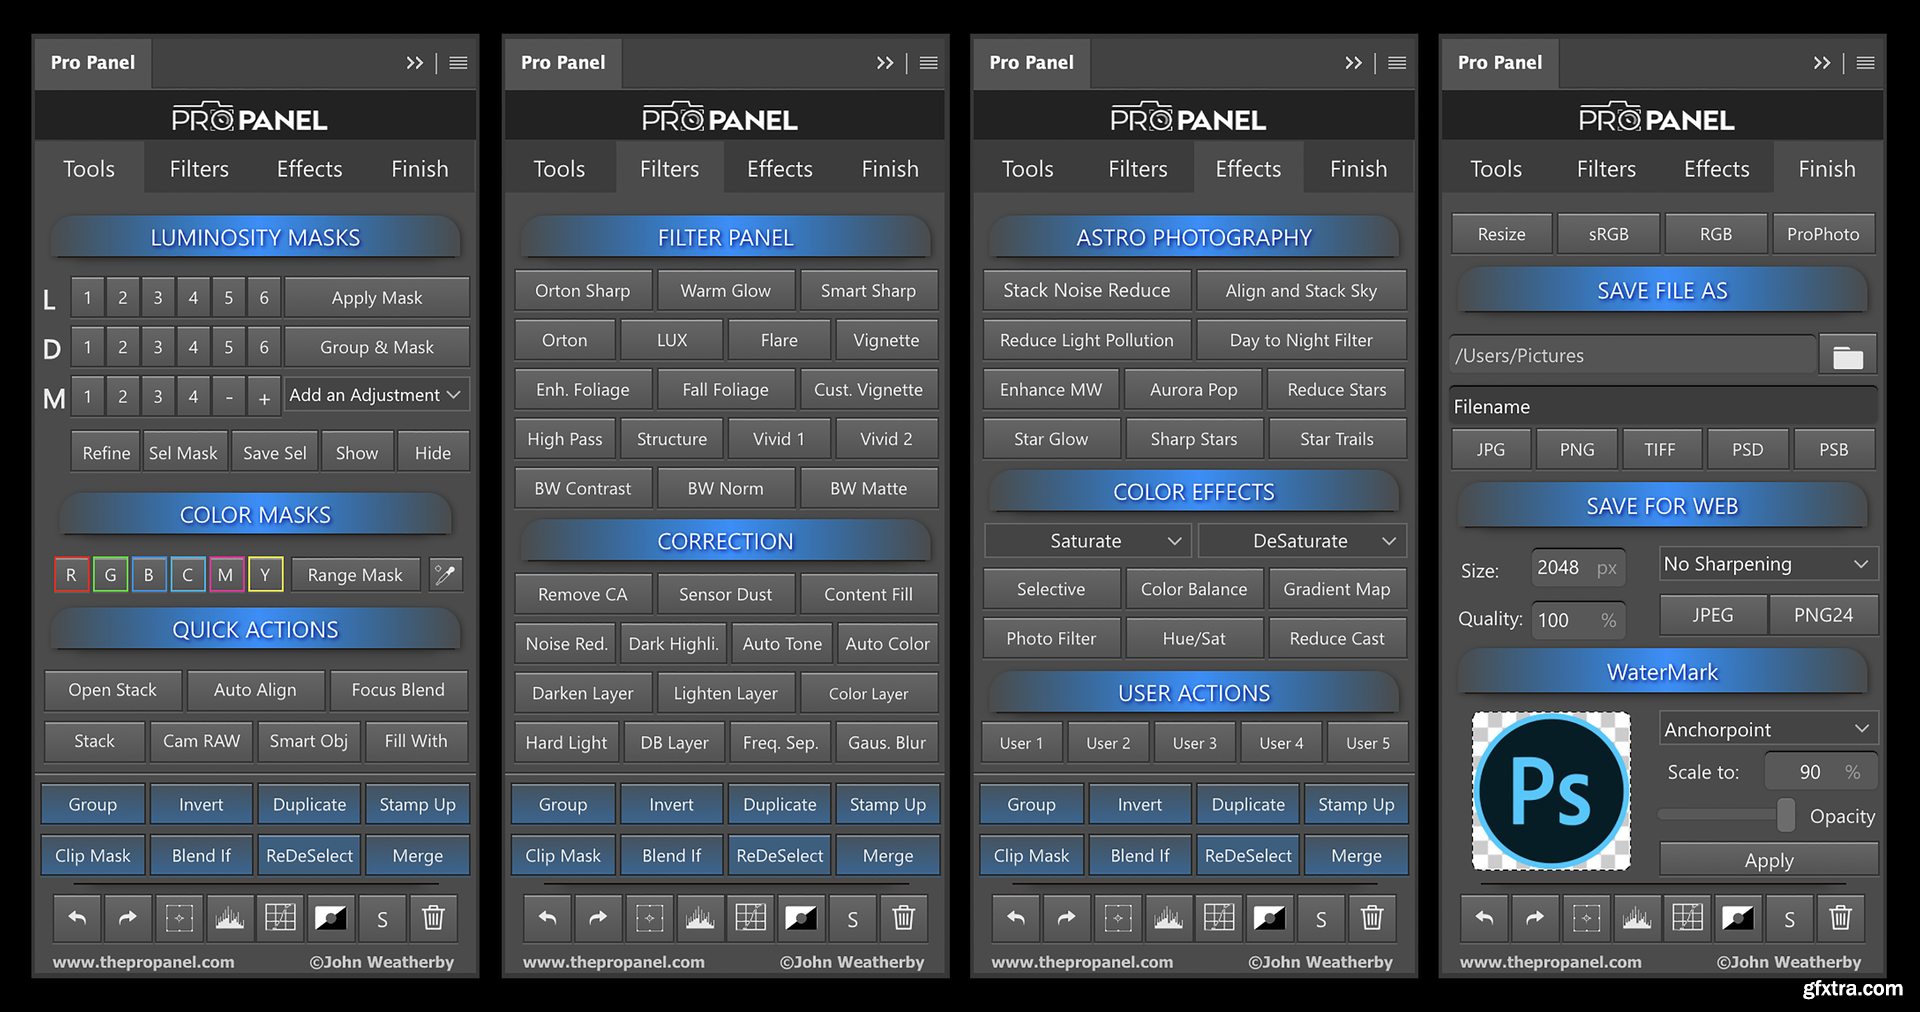 Panel pdf. Pro Panel 1.5.2. Pro Panel Photoshop. Pro Panel Photoshop torrent. Ультимейт панель для фотошопа.